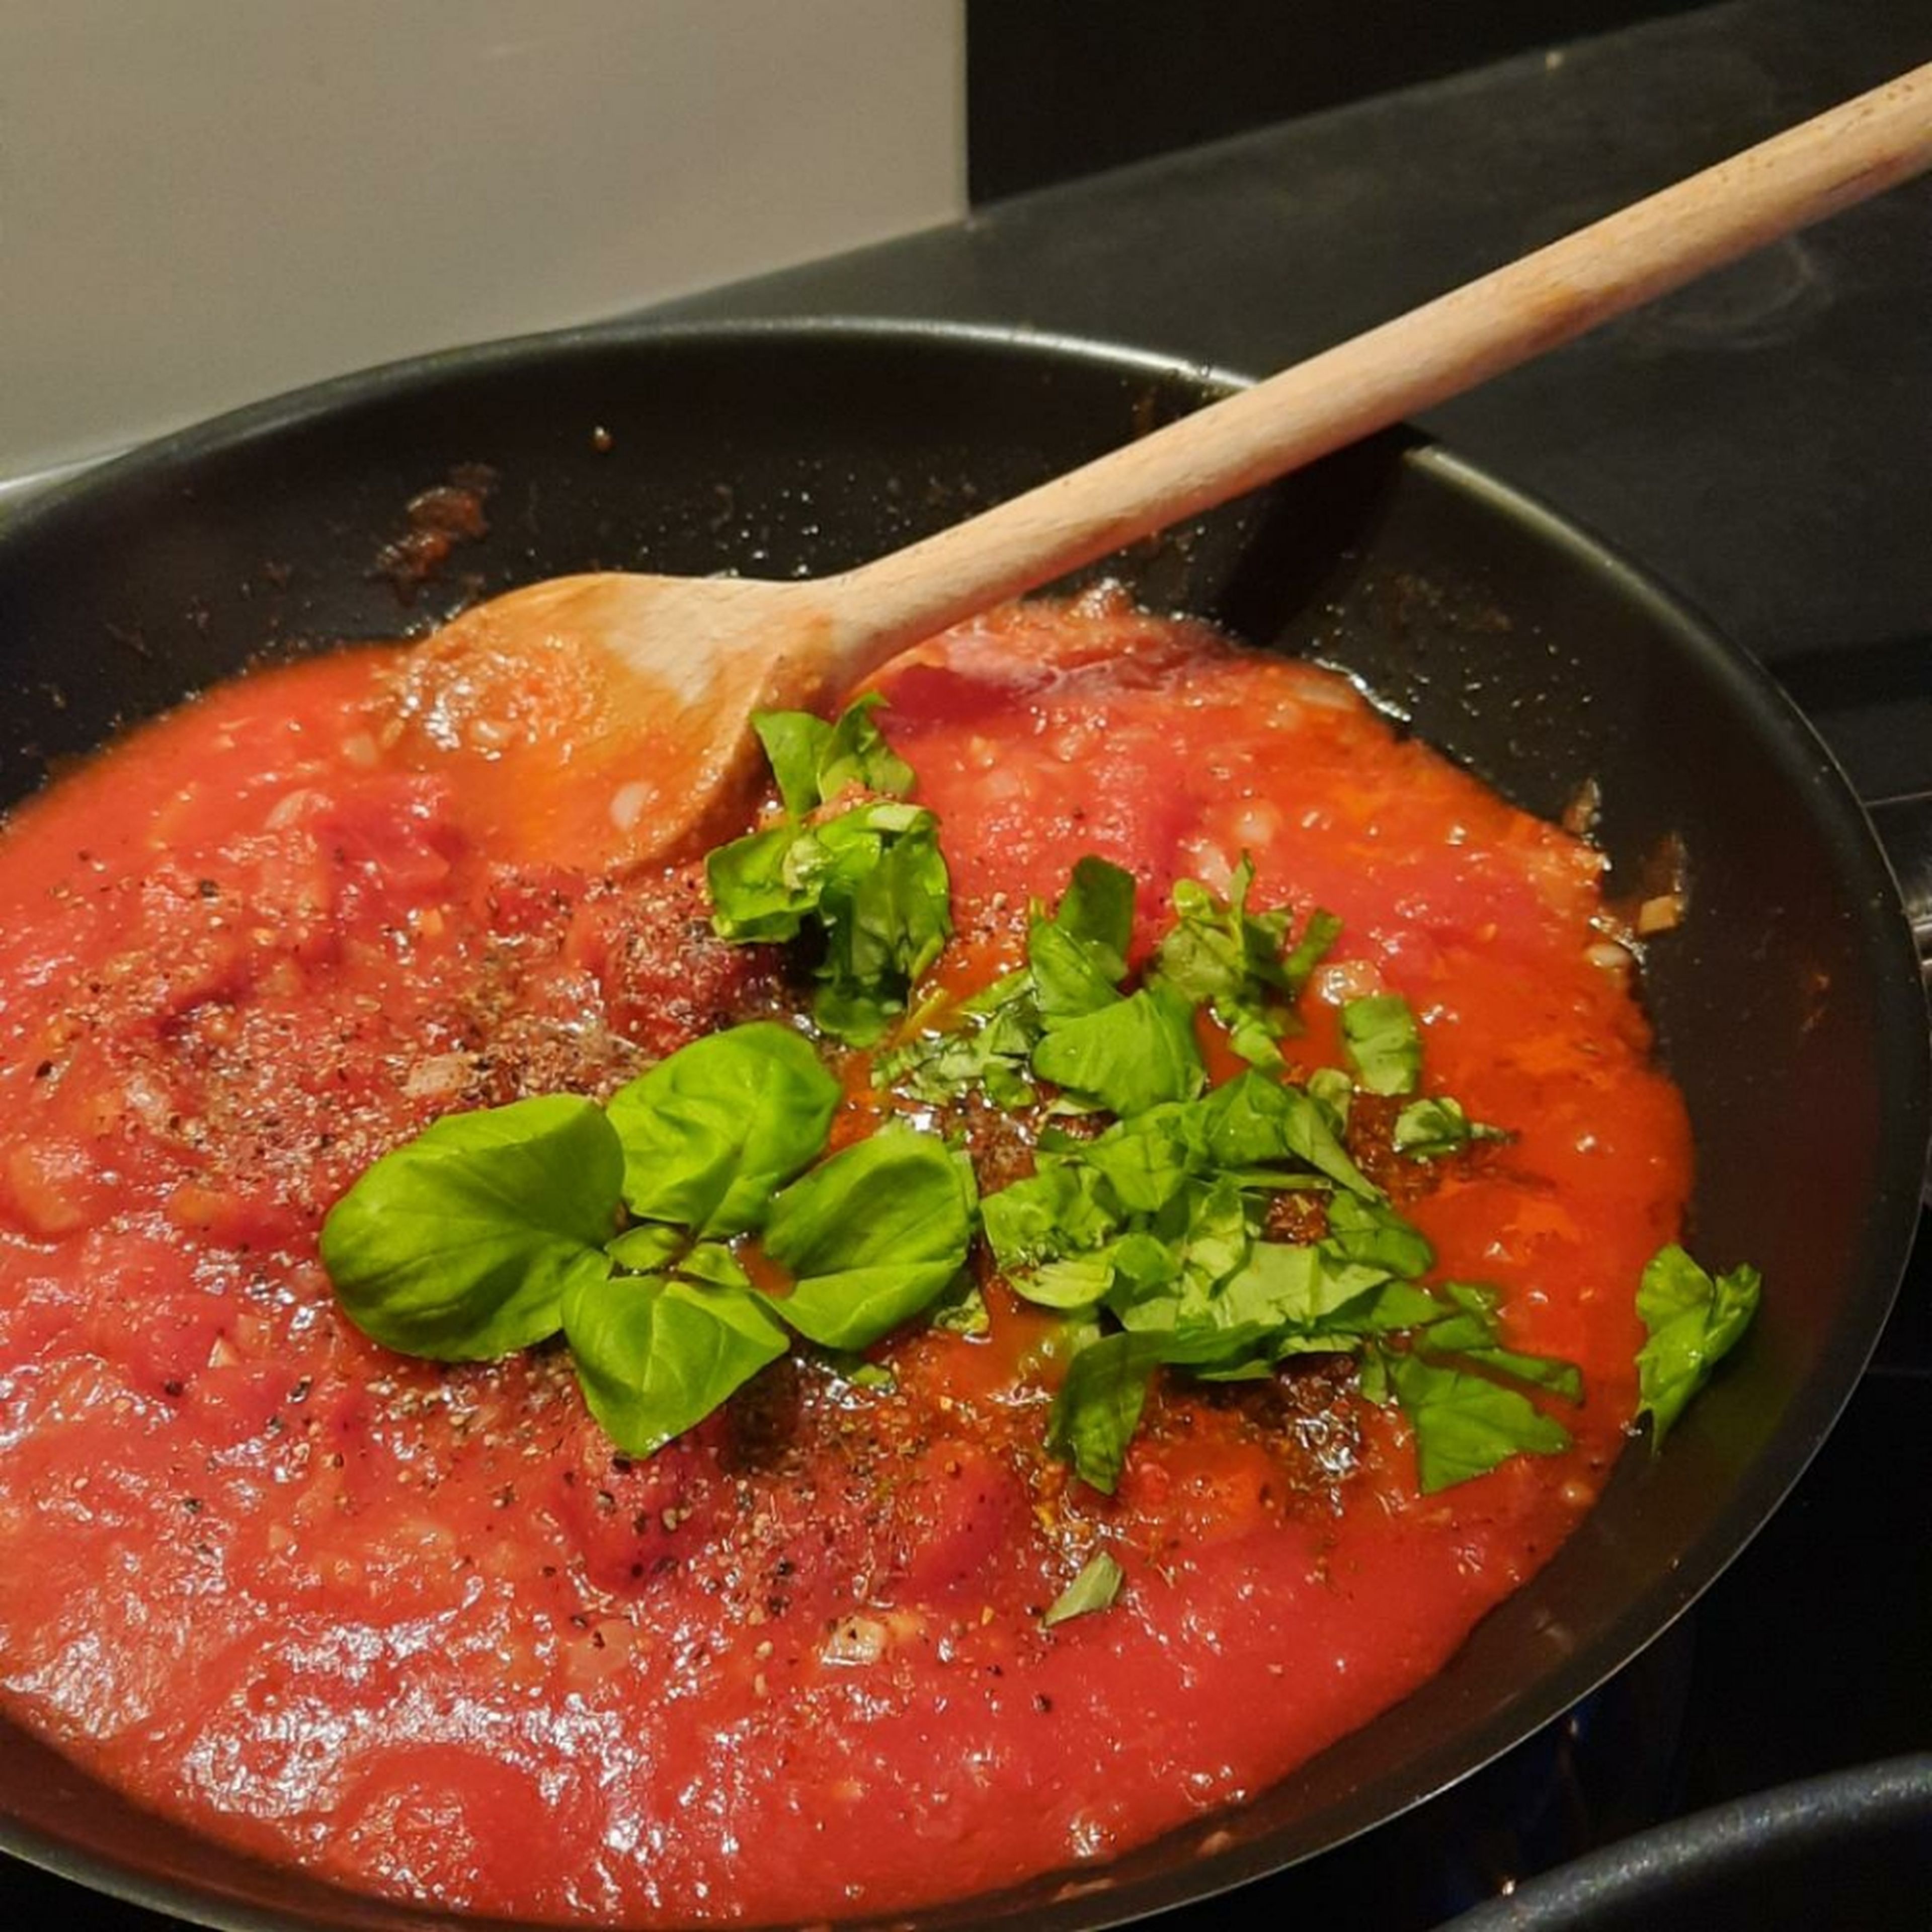 Die Tomatensoße nach Belieben würzen. Basilikum haken, zu der Soße geben und alles miteinander vermischen.